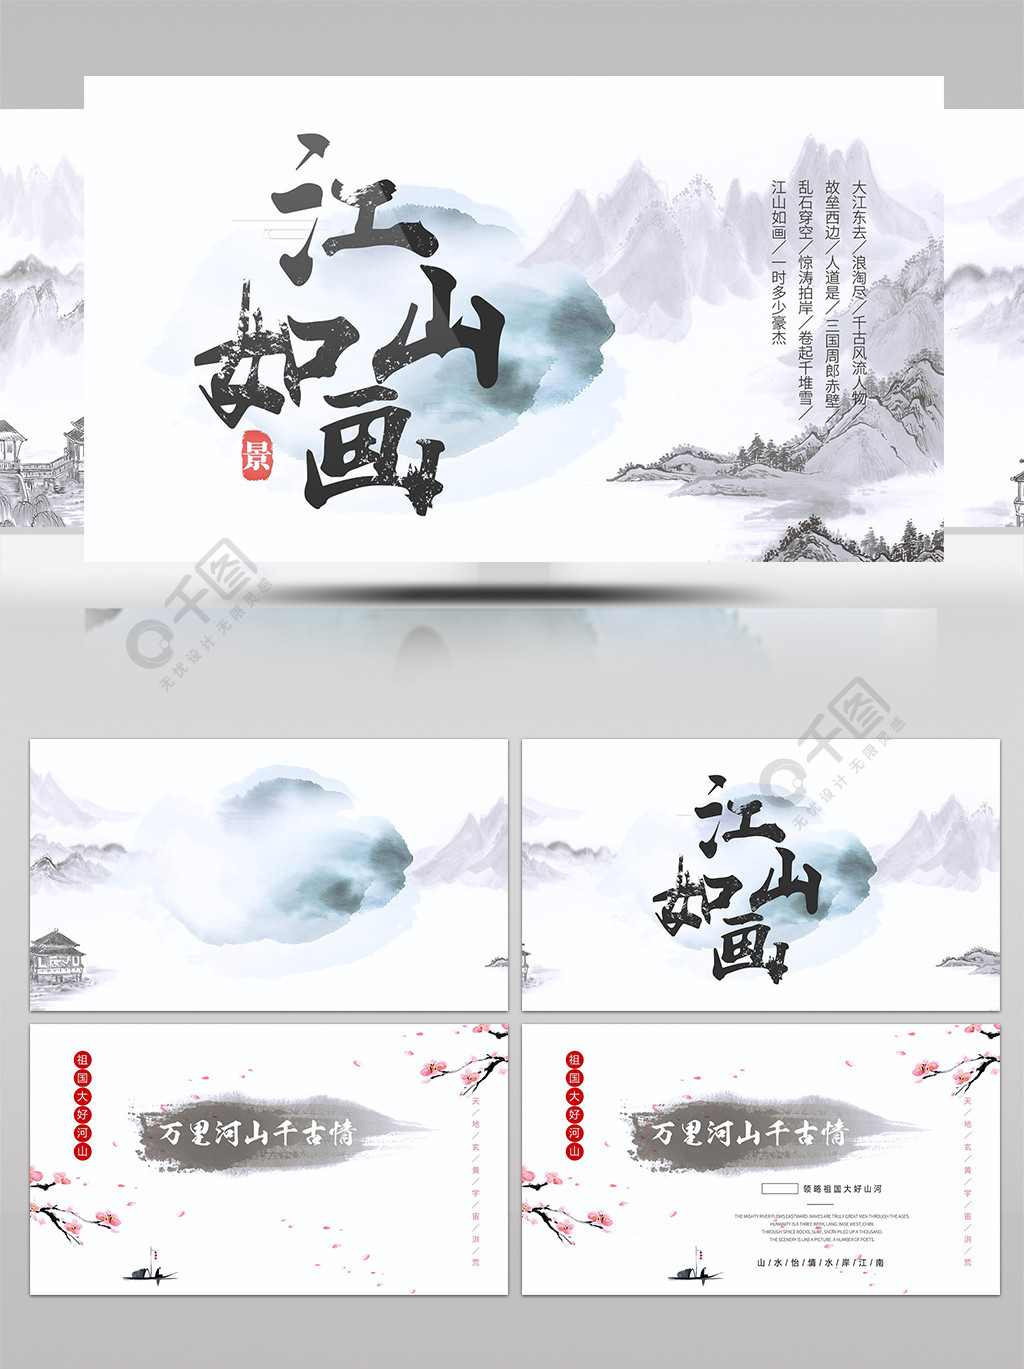 江山如画水墨中国传统文化宣传片